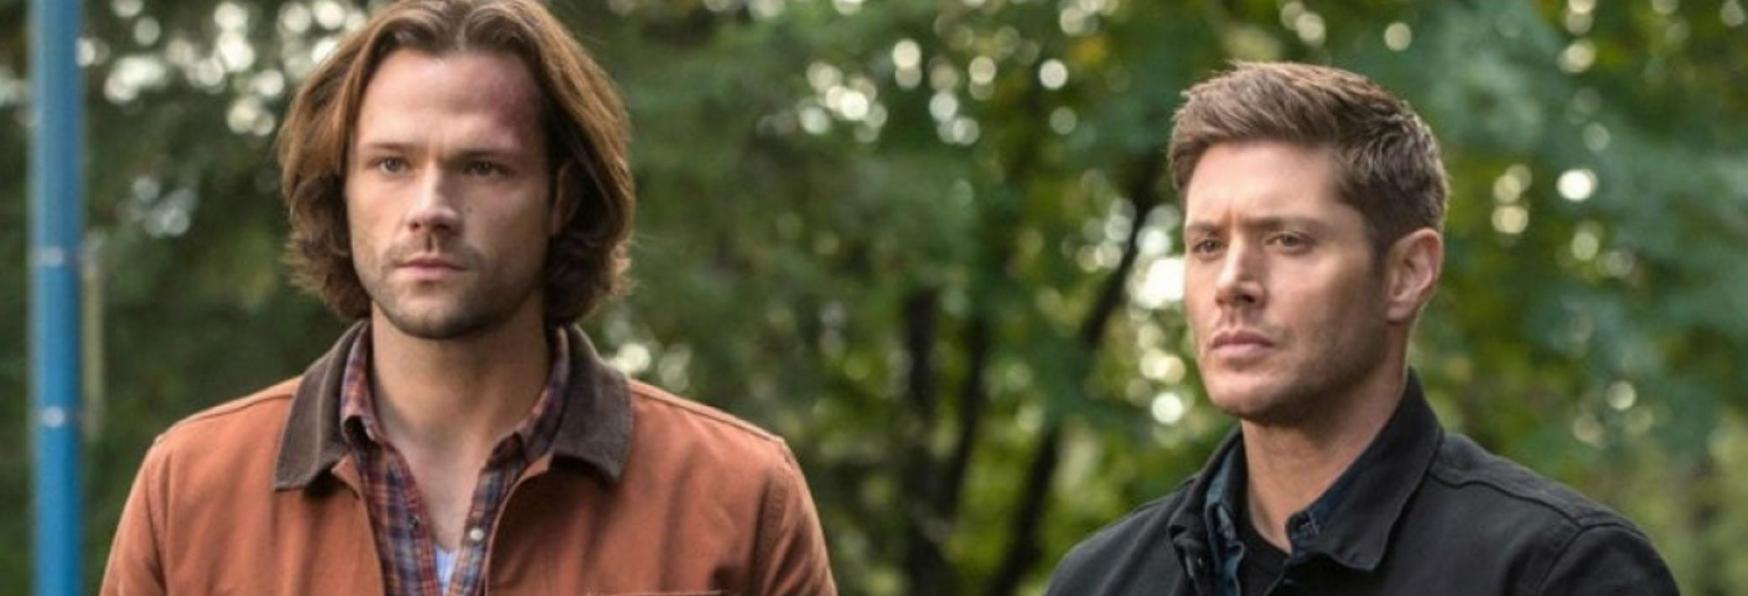 Supernatural: The CW ordina il Pilot di nuova Serie TV Prequel